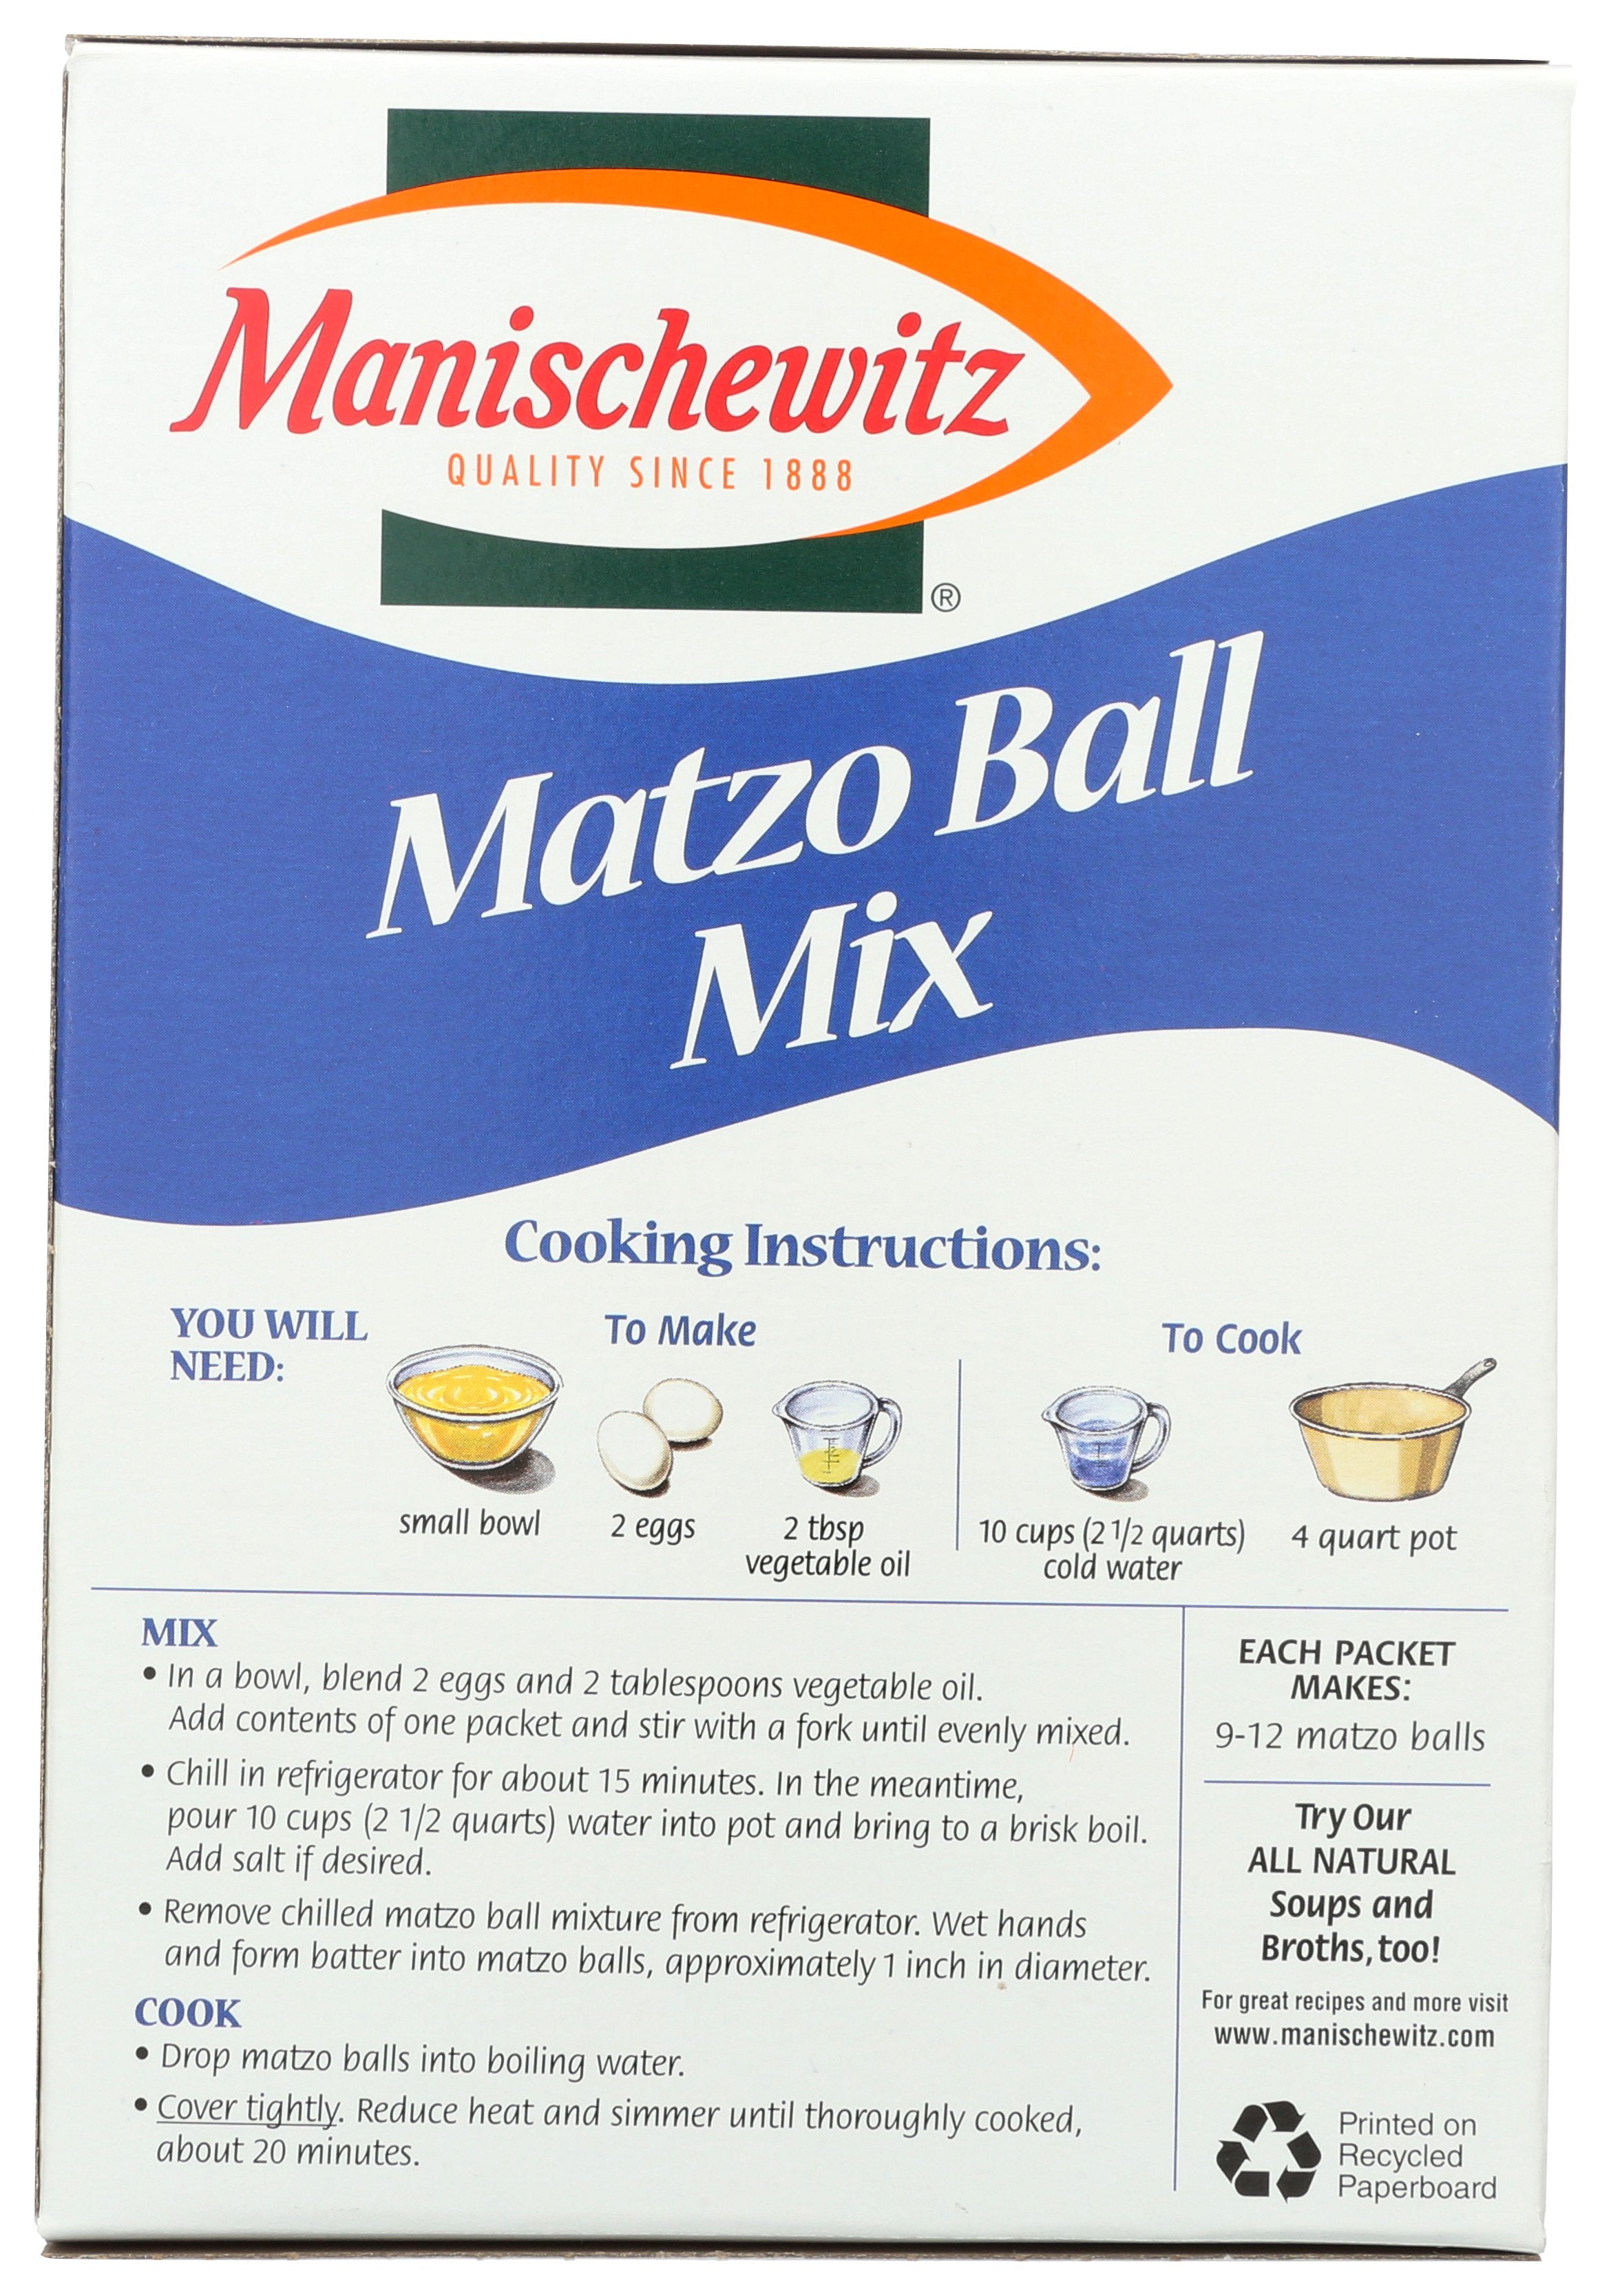 MANISCHEWITZ MIX MATZO BALL - Case of 12